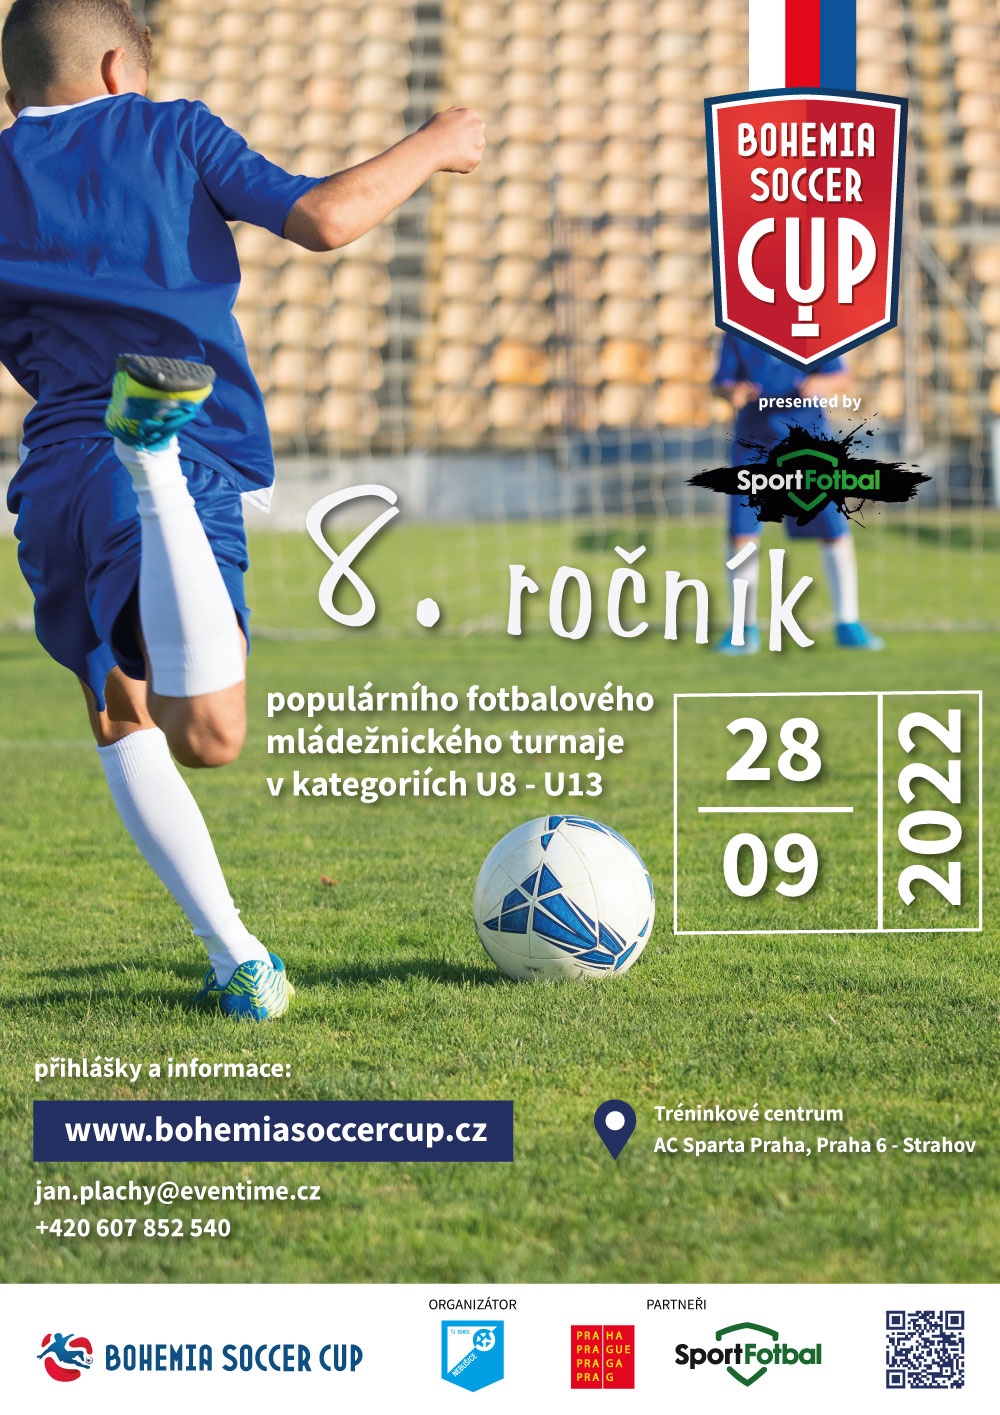 Bohemia Soccer Cup Strahov - 28.9.2022 - Tréninkové centrum AC Sparta Praha